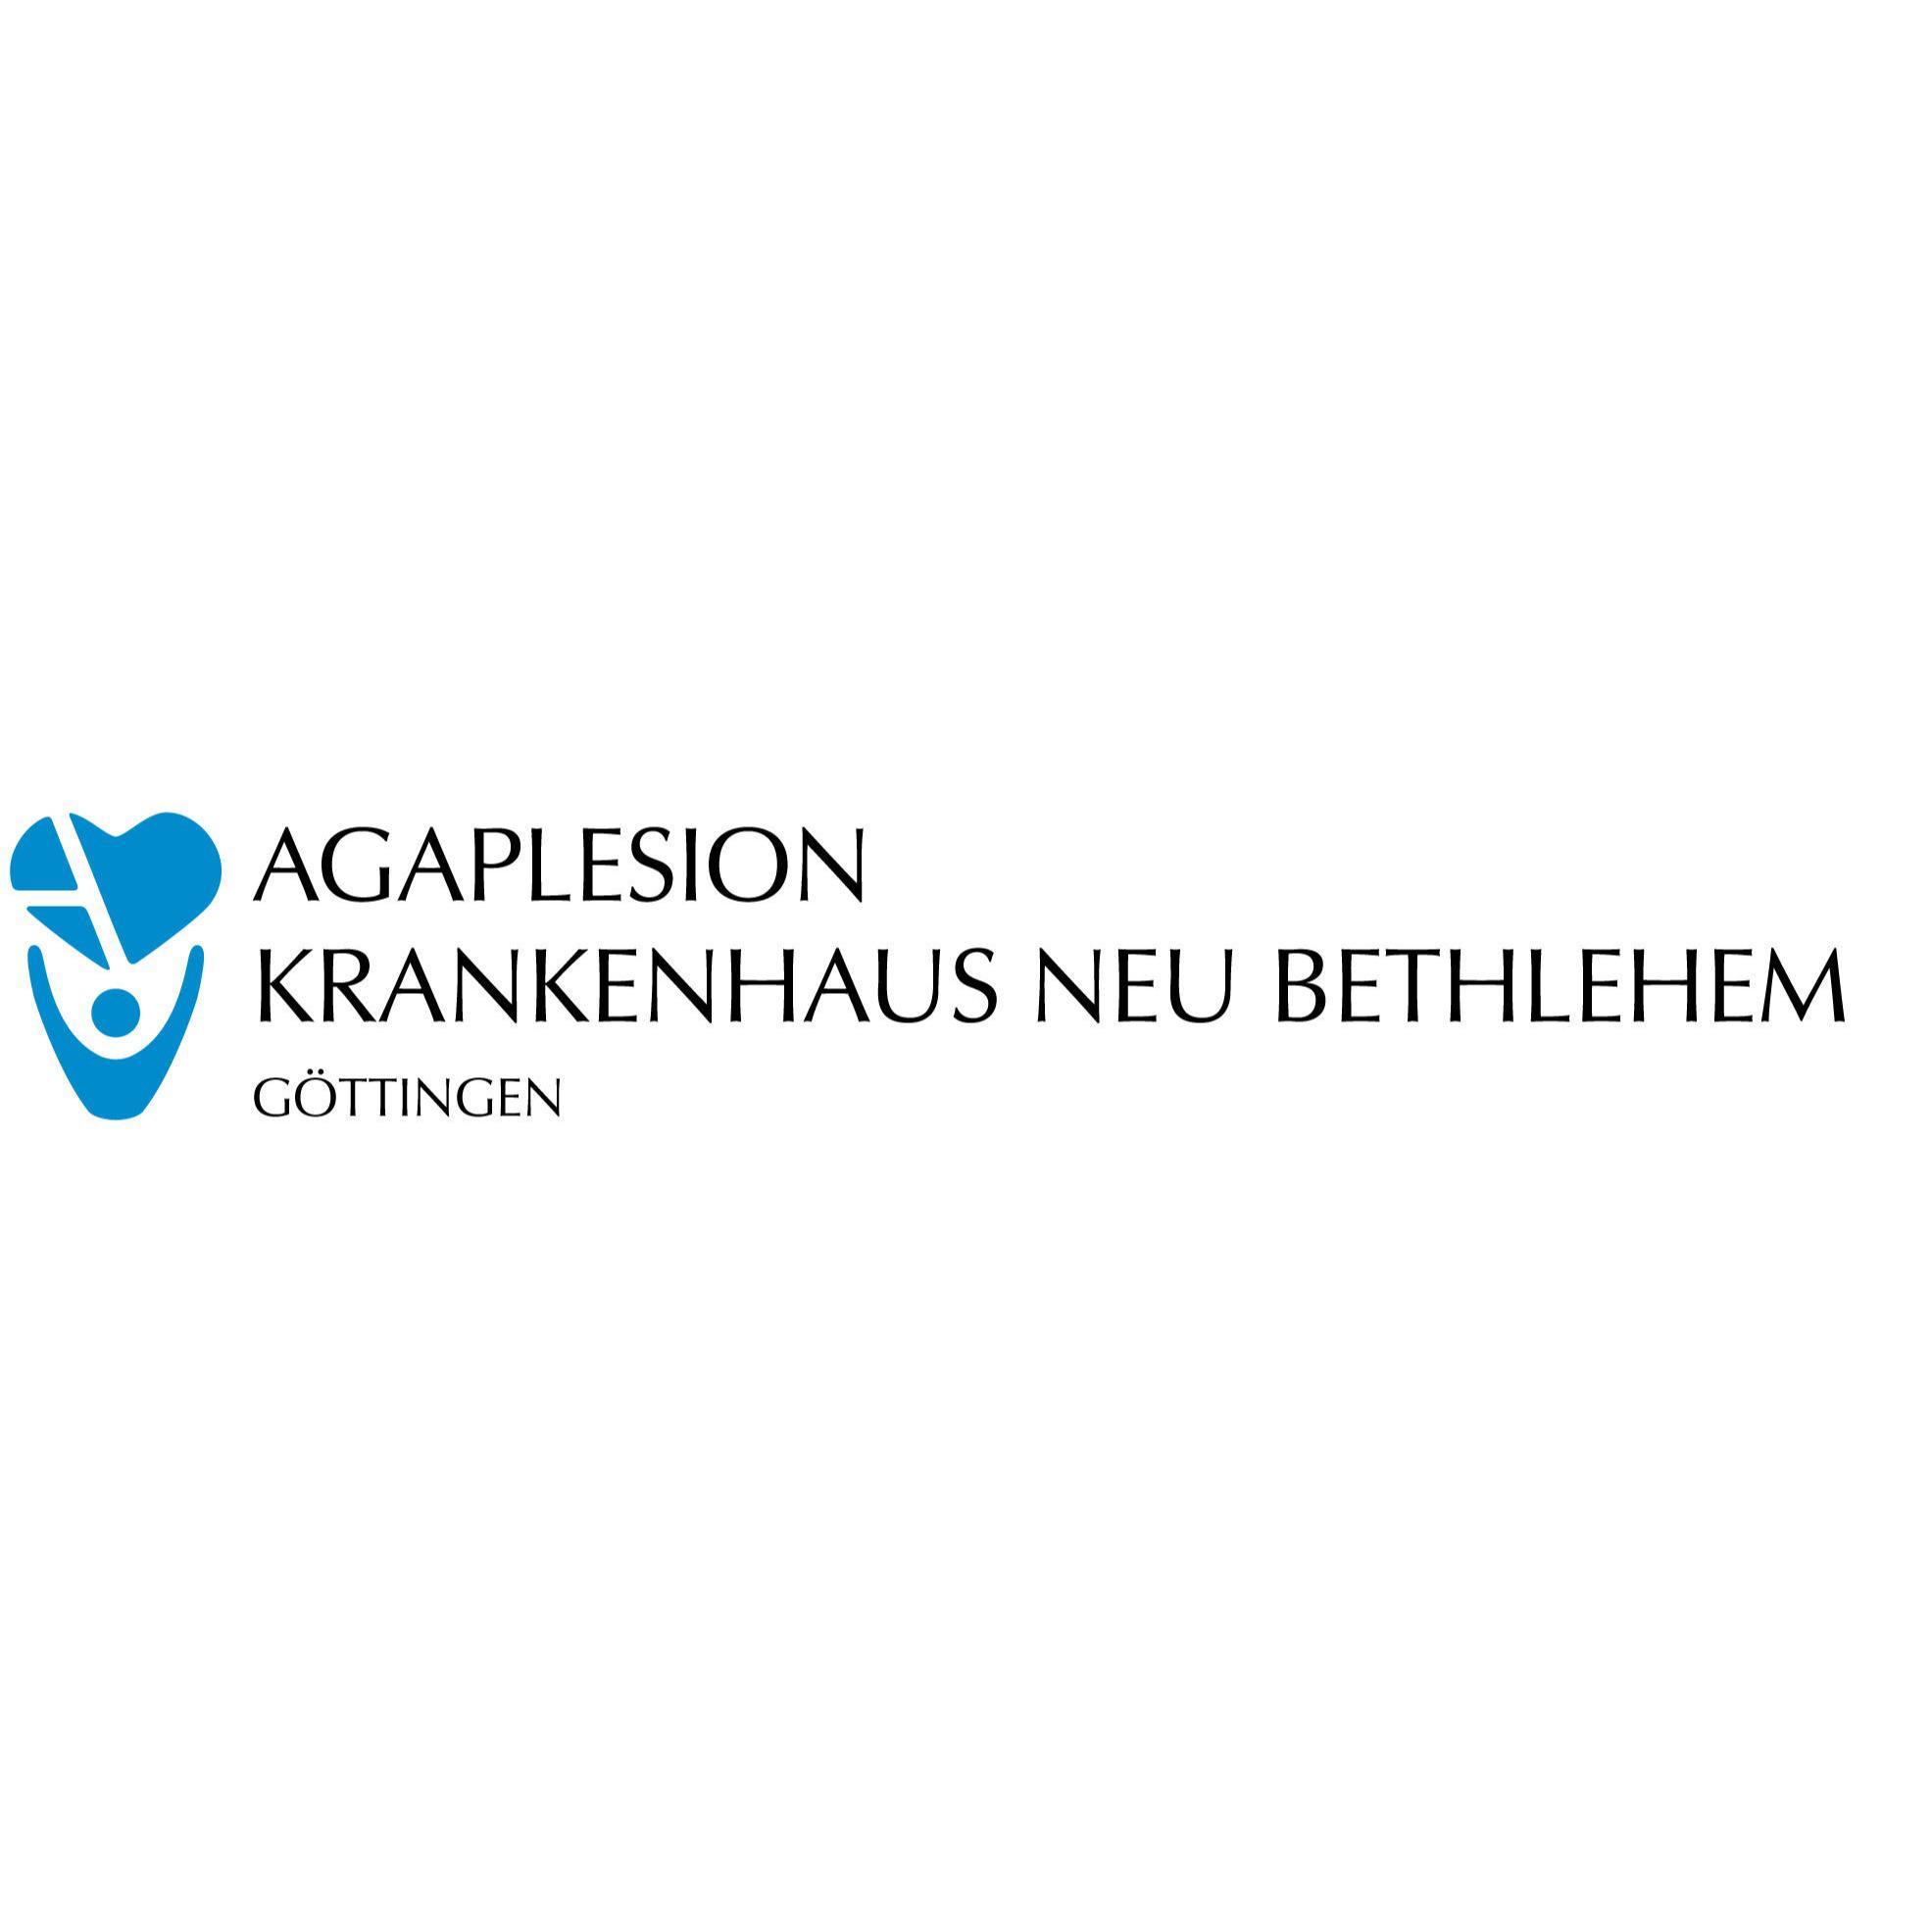 AGAPLESION KRANKENHAUS NEU BETHLEHEM in Göttingen - Logo